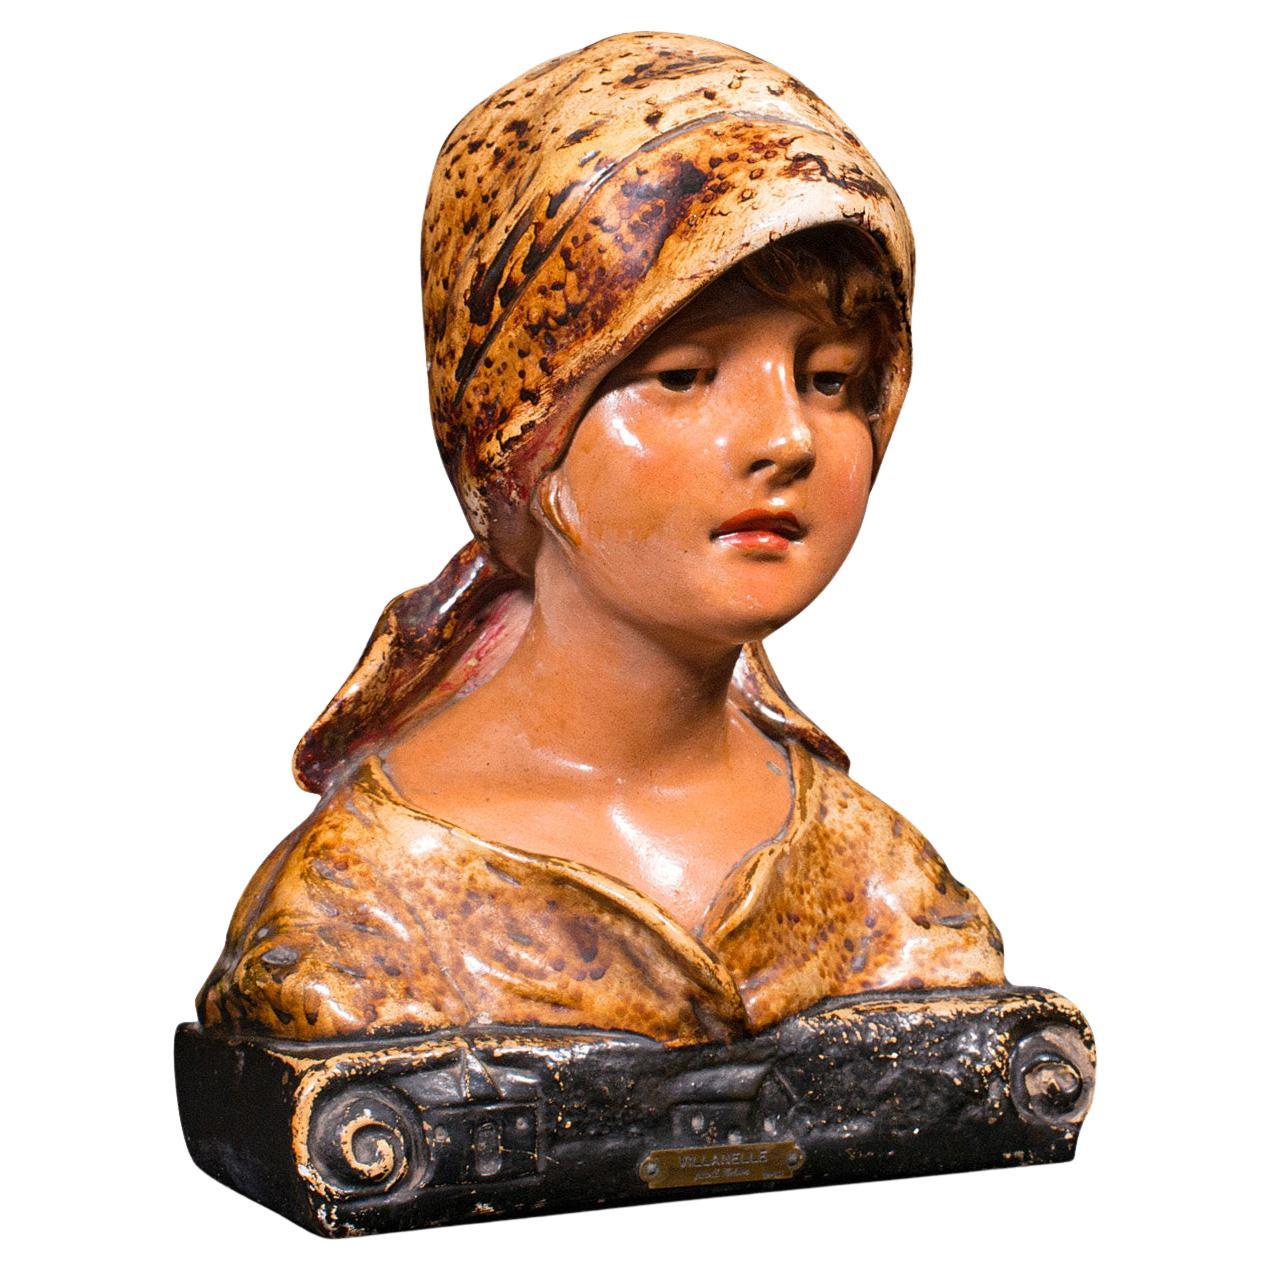 Buste portrait ancien français, décoratif, figure féminine, victorien, Art nouveau